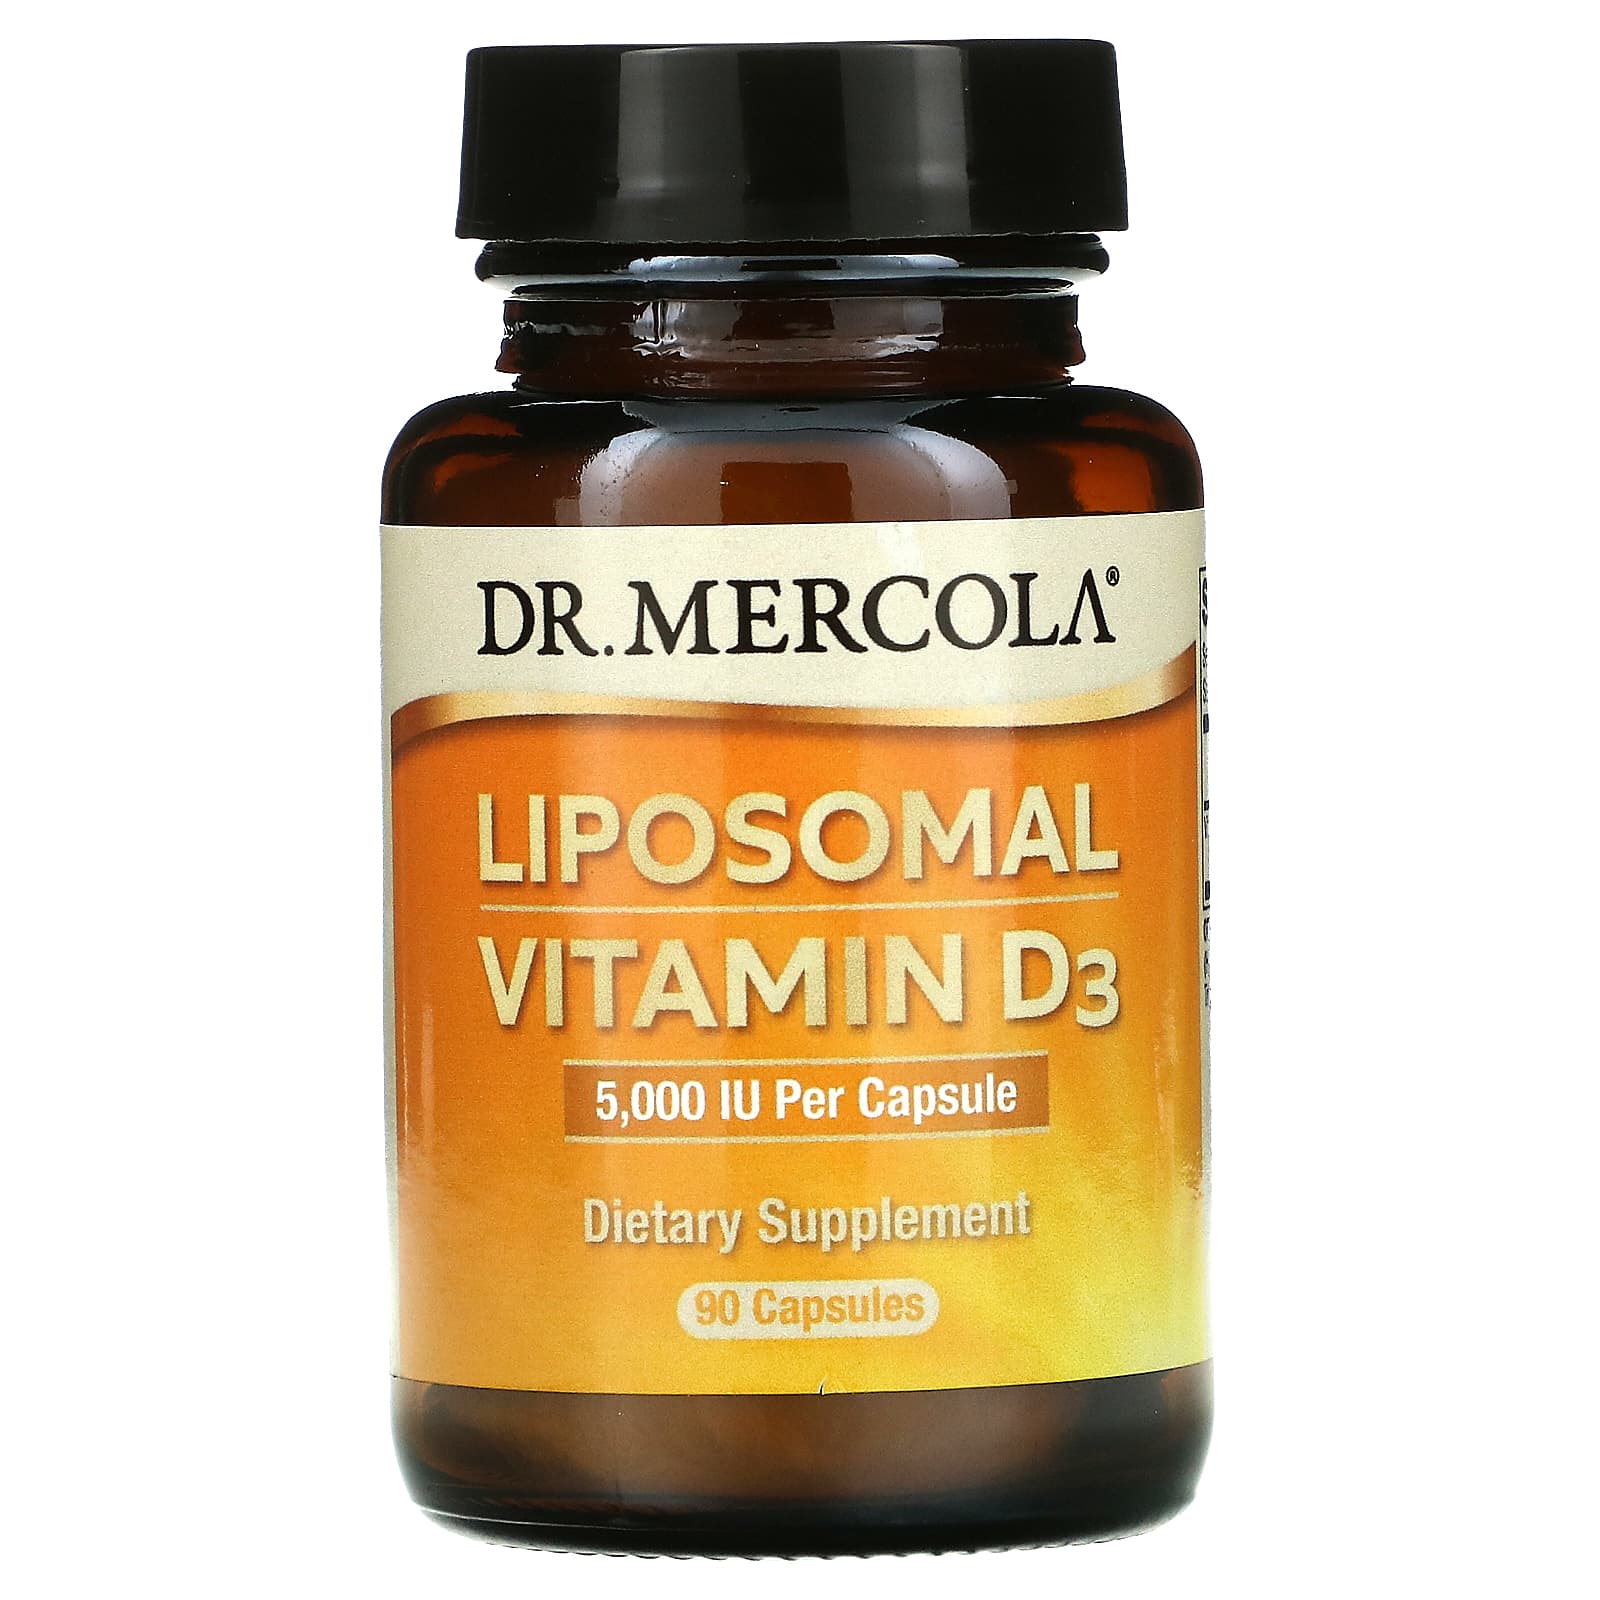 Dr. Mercola липосомальный витамин D3 5000 МЕ 90 капсул mercola solspring органическое золотое молоко 2 64 унции 75 г dr mercola